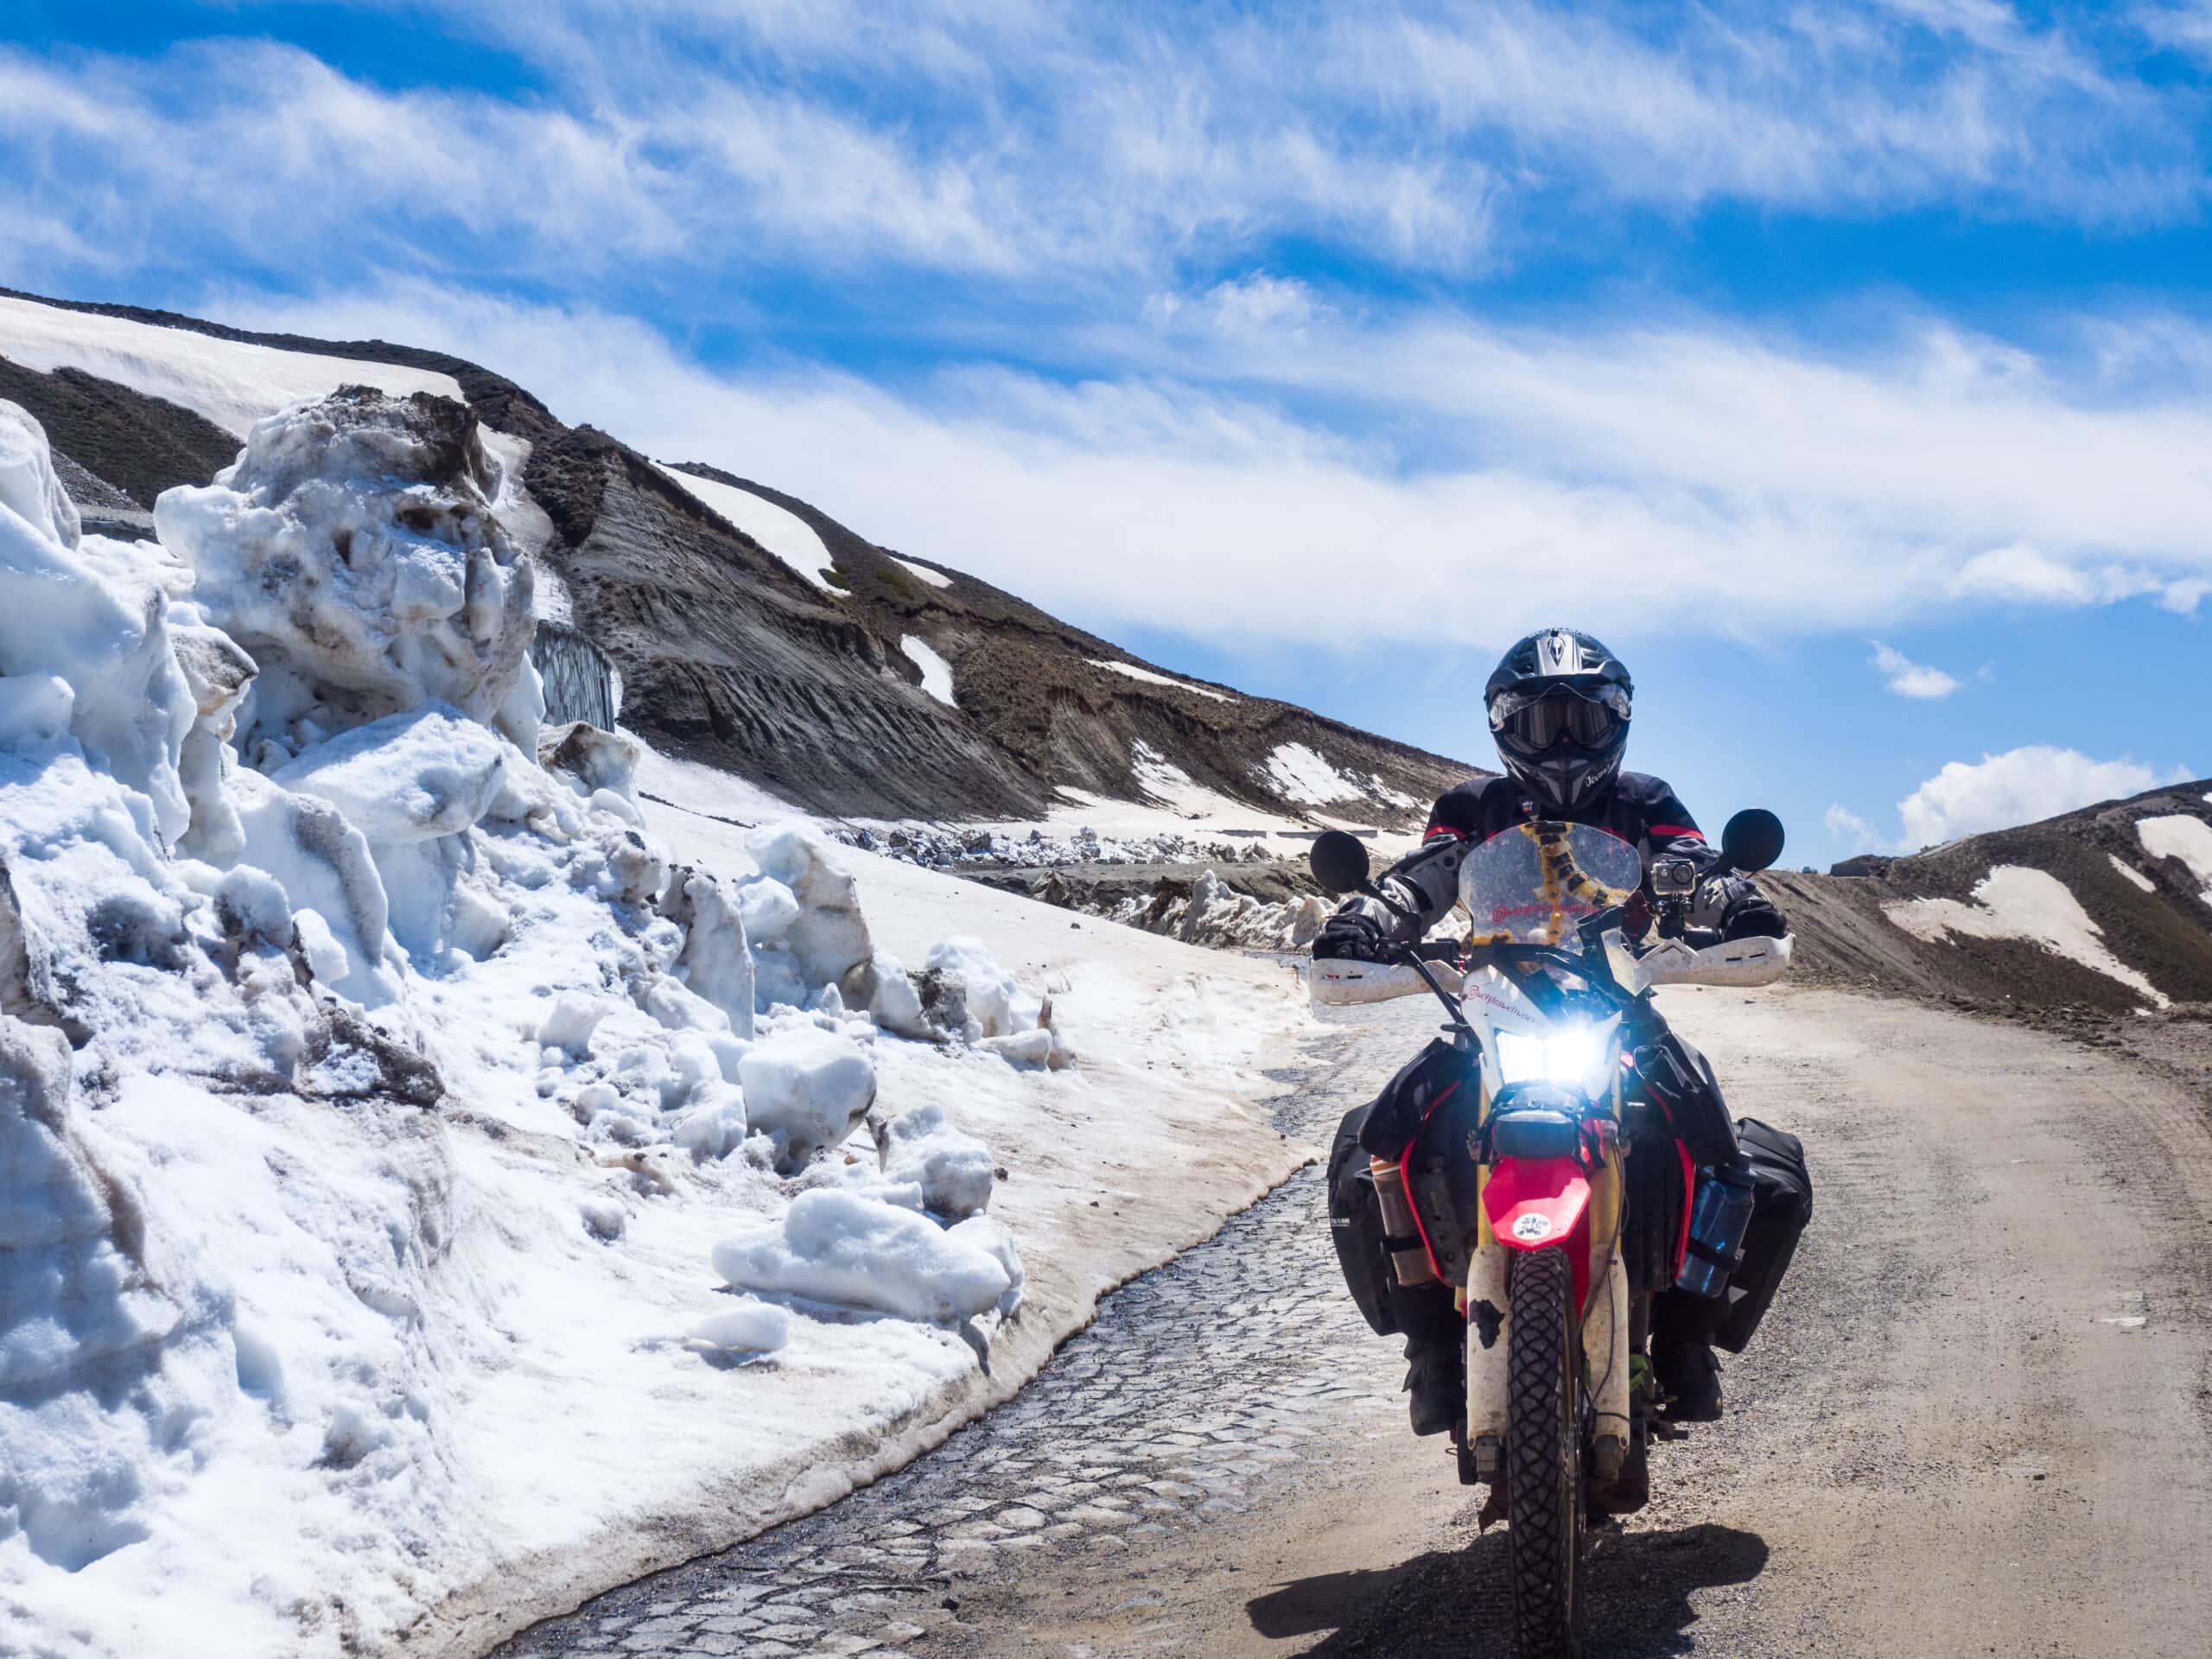 95.000 Kilometer On- und Offraod durch Südamerika und Afrika ist Joana bereits vier Monate nach bestandenem Motorradführerschein gefahren.